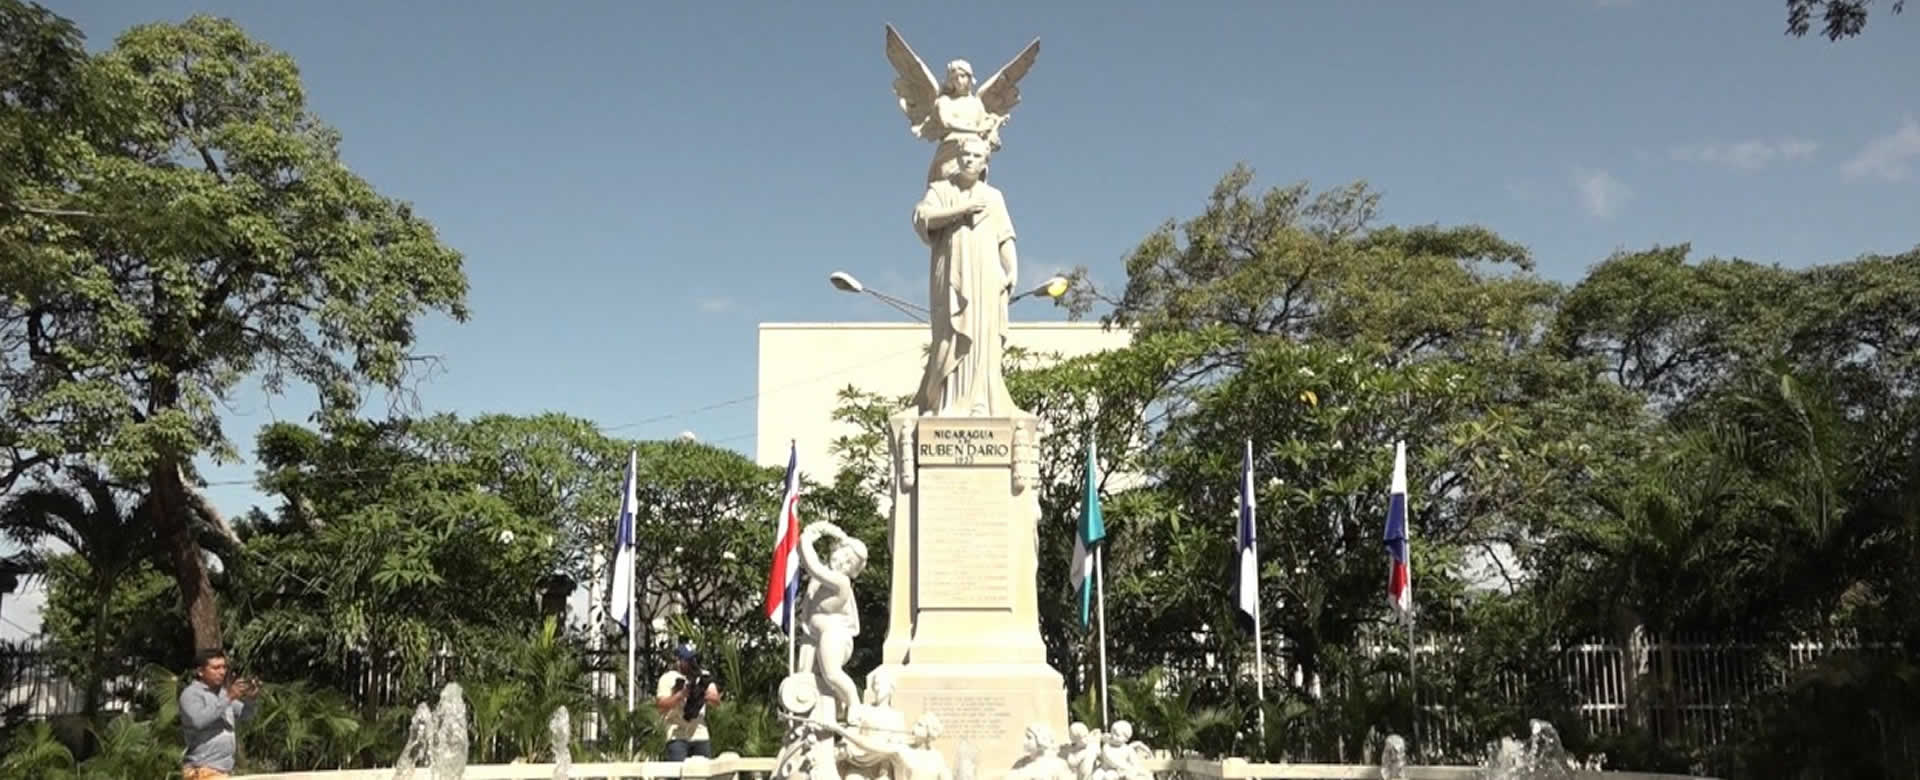 Managua rendirá homenaje al Poeta Rubén Darío durante 25 días